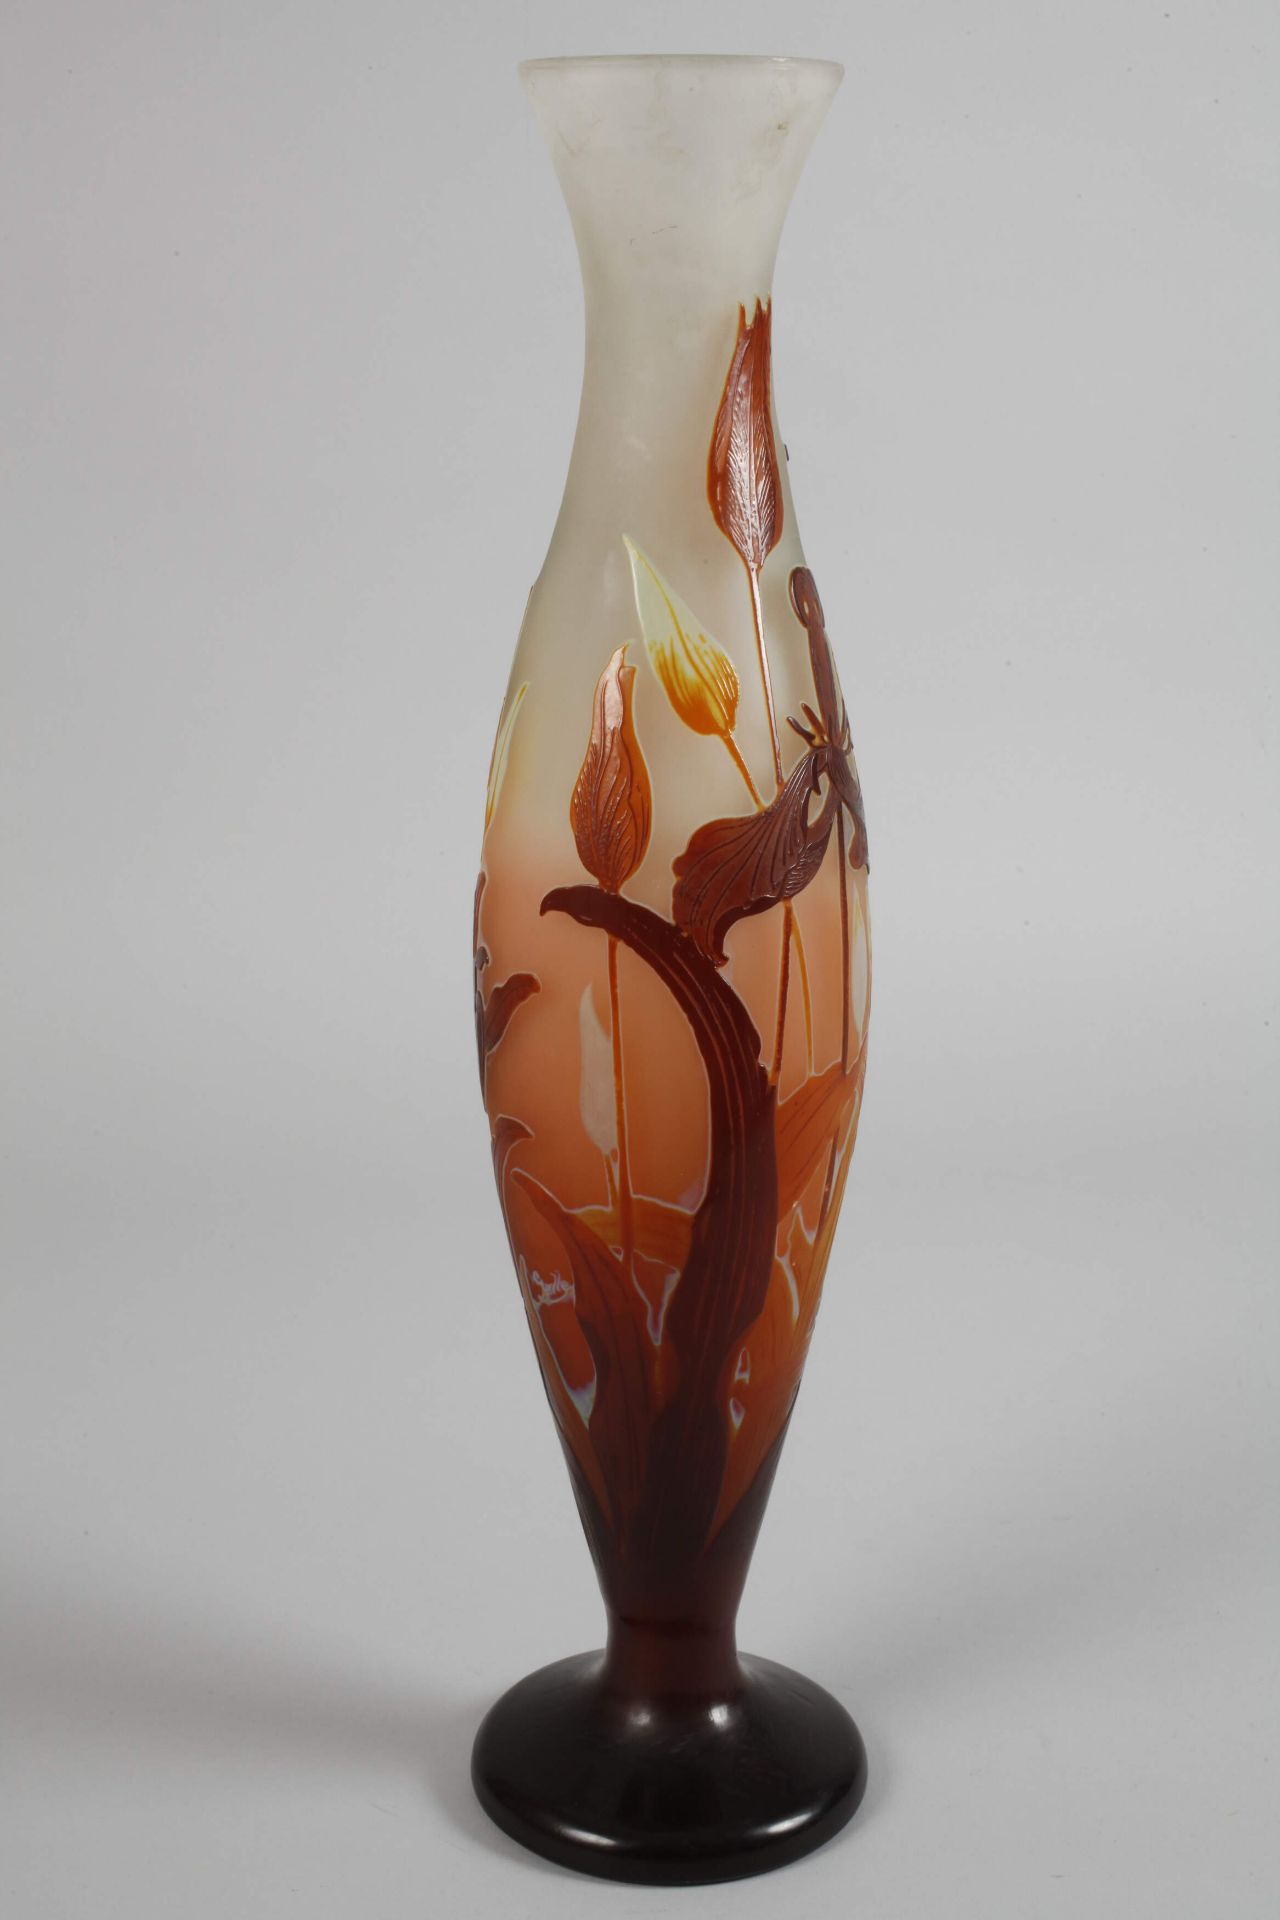 Large Émile Gallé vase - Image 3 of 5